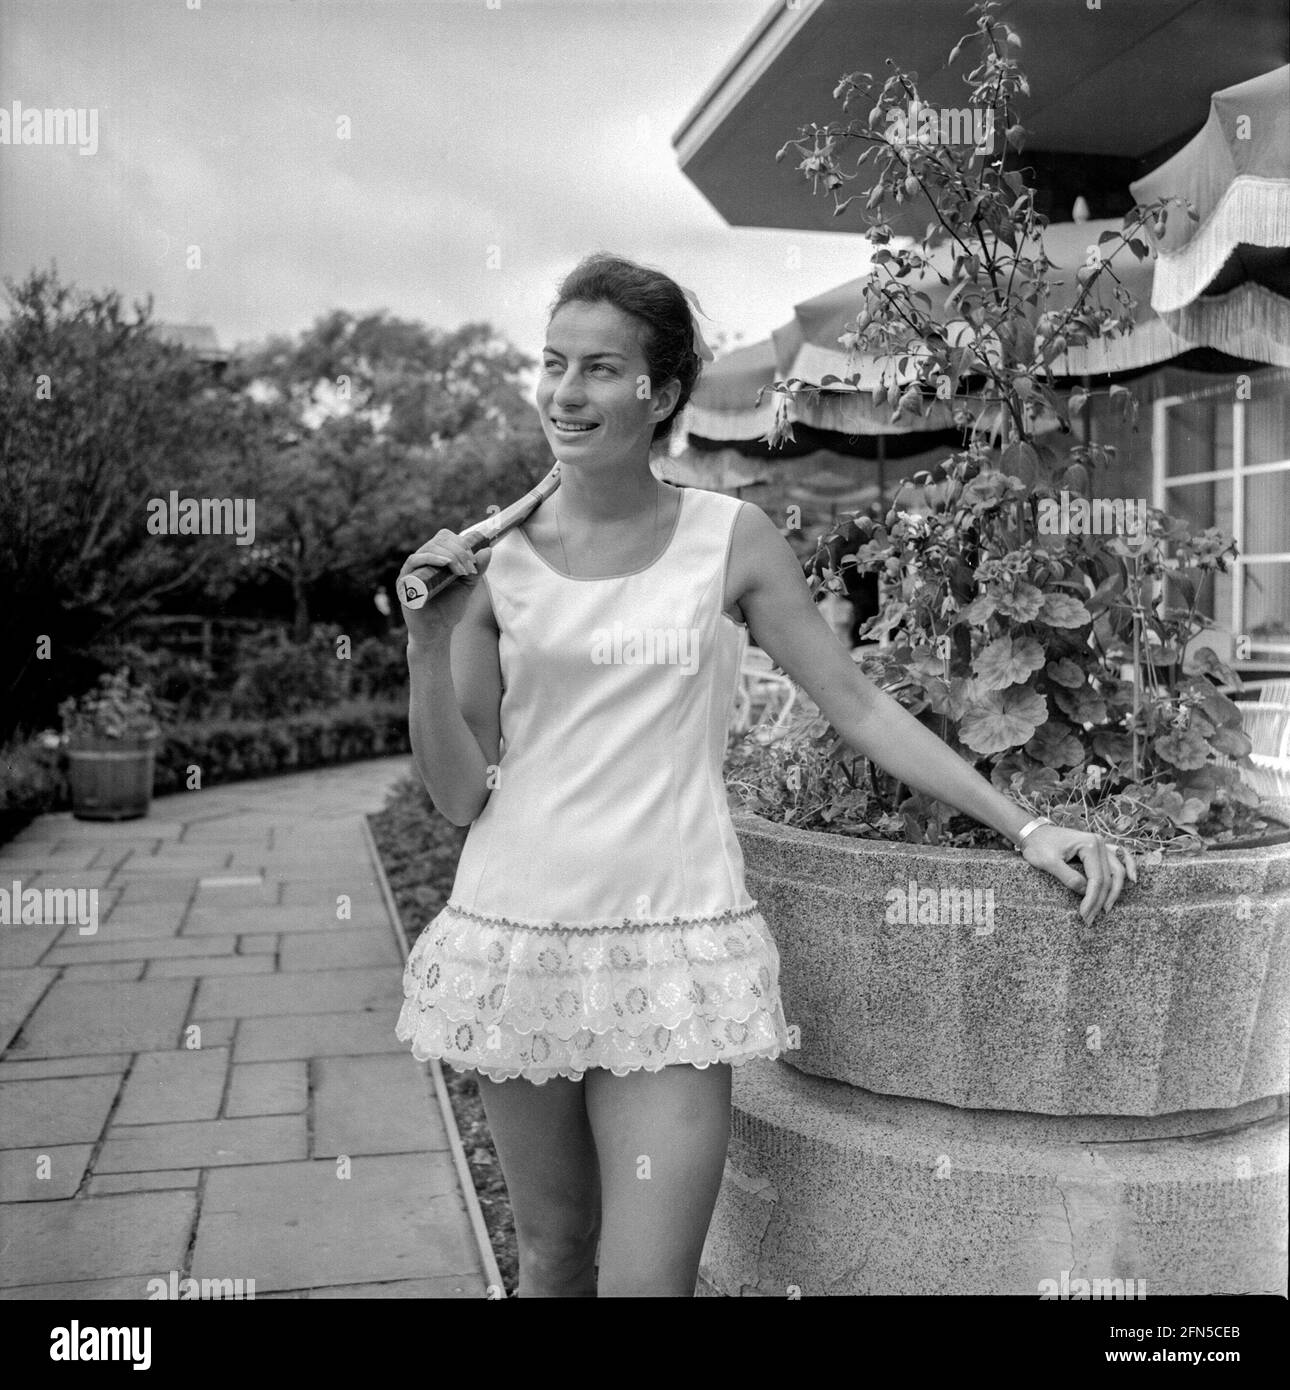 Die britische Tennismeisterin Virginia Wade posiert mit einem neuen Tenniskleid von Teddy Tinling für die Kamera. Sie ist im Dachgarten von Derry and Toms in Kensington, London, zu sehen. Stockfoto